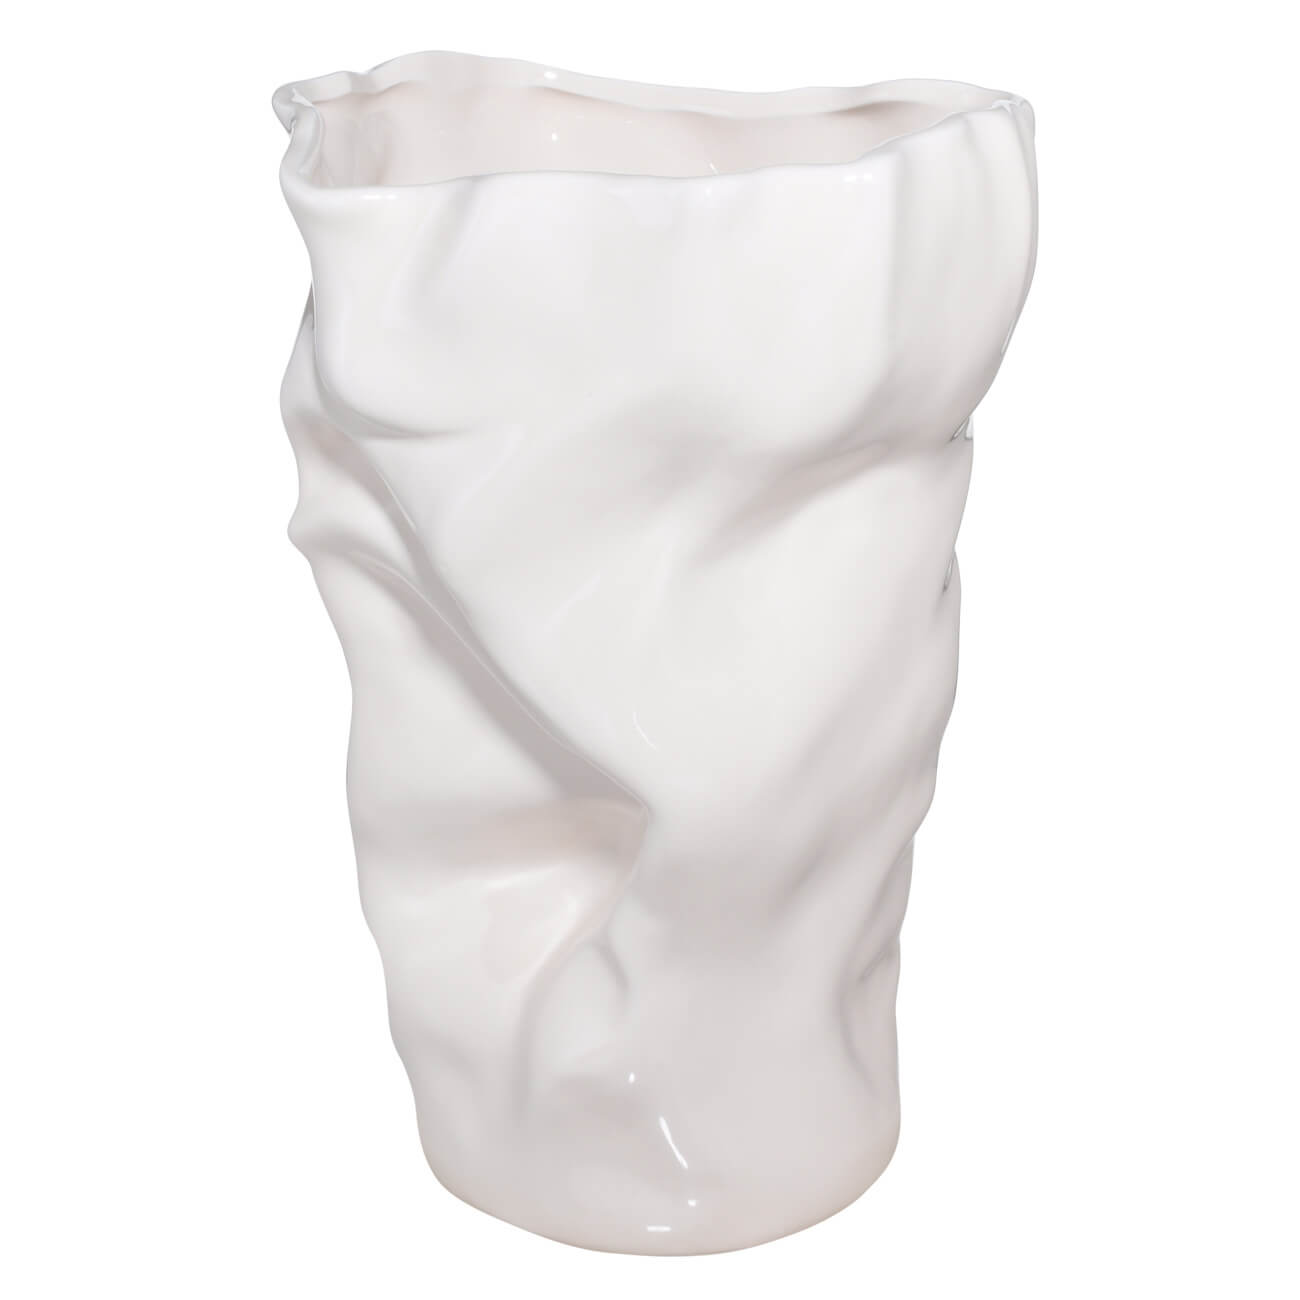 Ваза для цветов, 27 см, керамика, молочная, Мятый эффект, Crumple ваза для ов 24 см керамика белая мятый эффект crumple